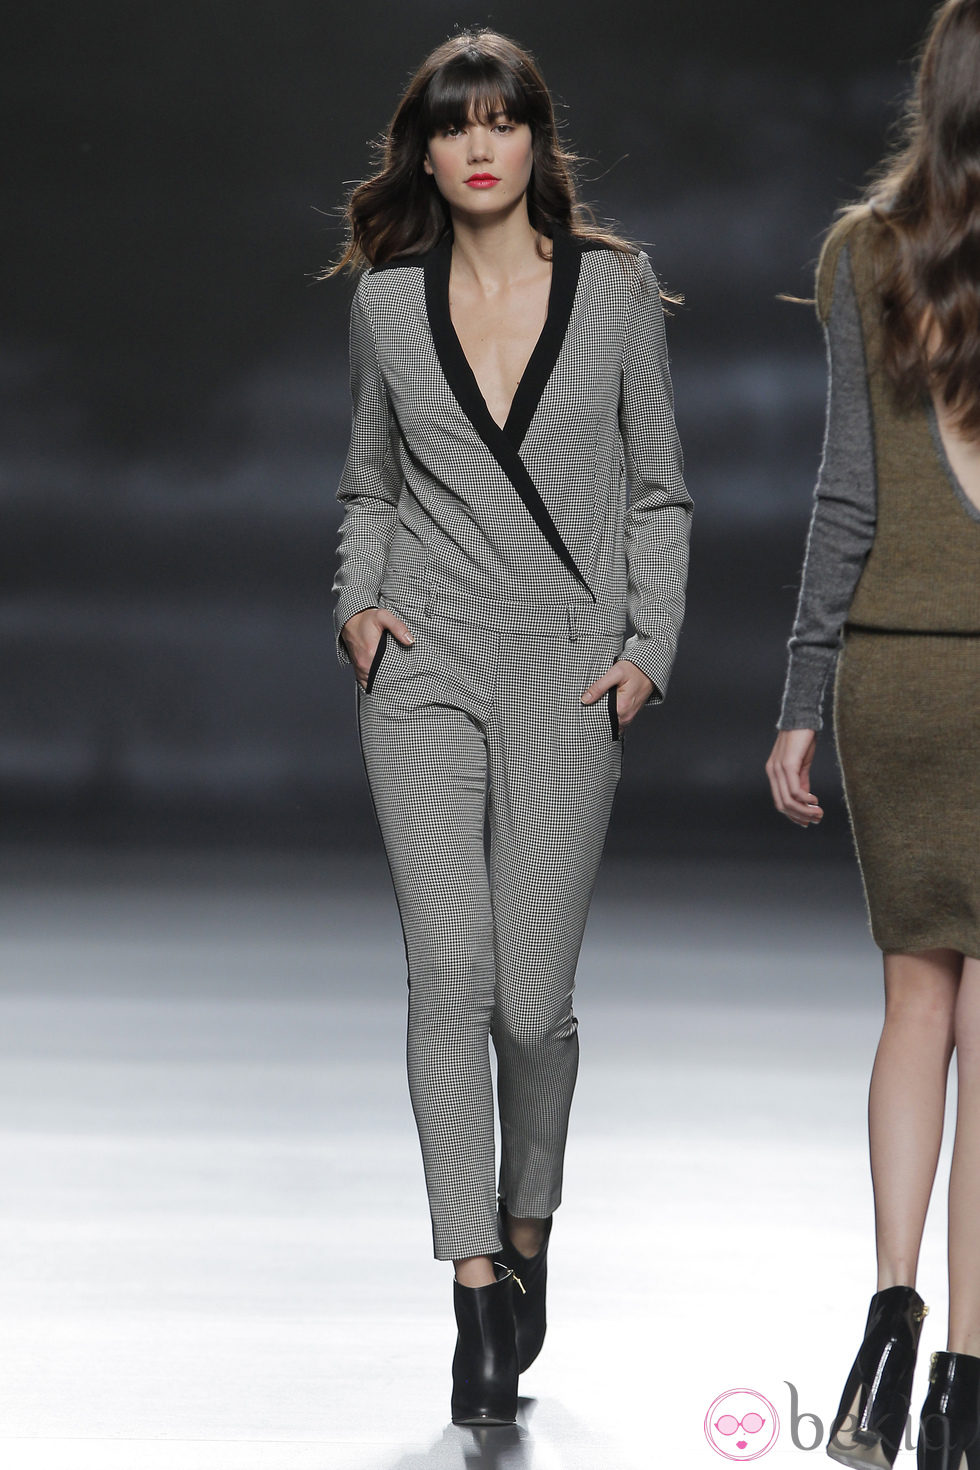 Mono gris de la colección otoño/invierno 2013/2014 de Sita Murt en Madrid Fashion Week